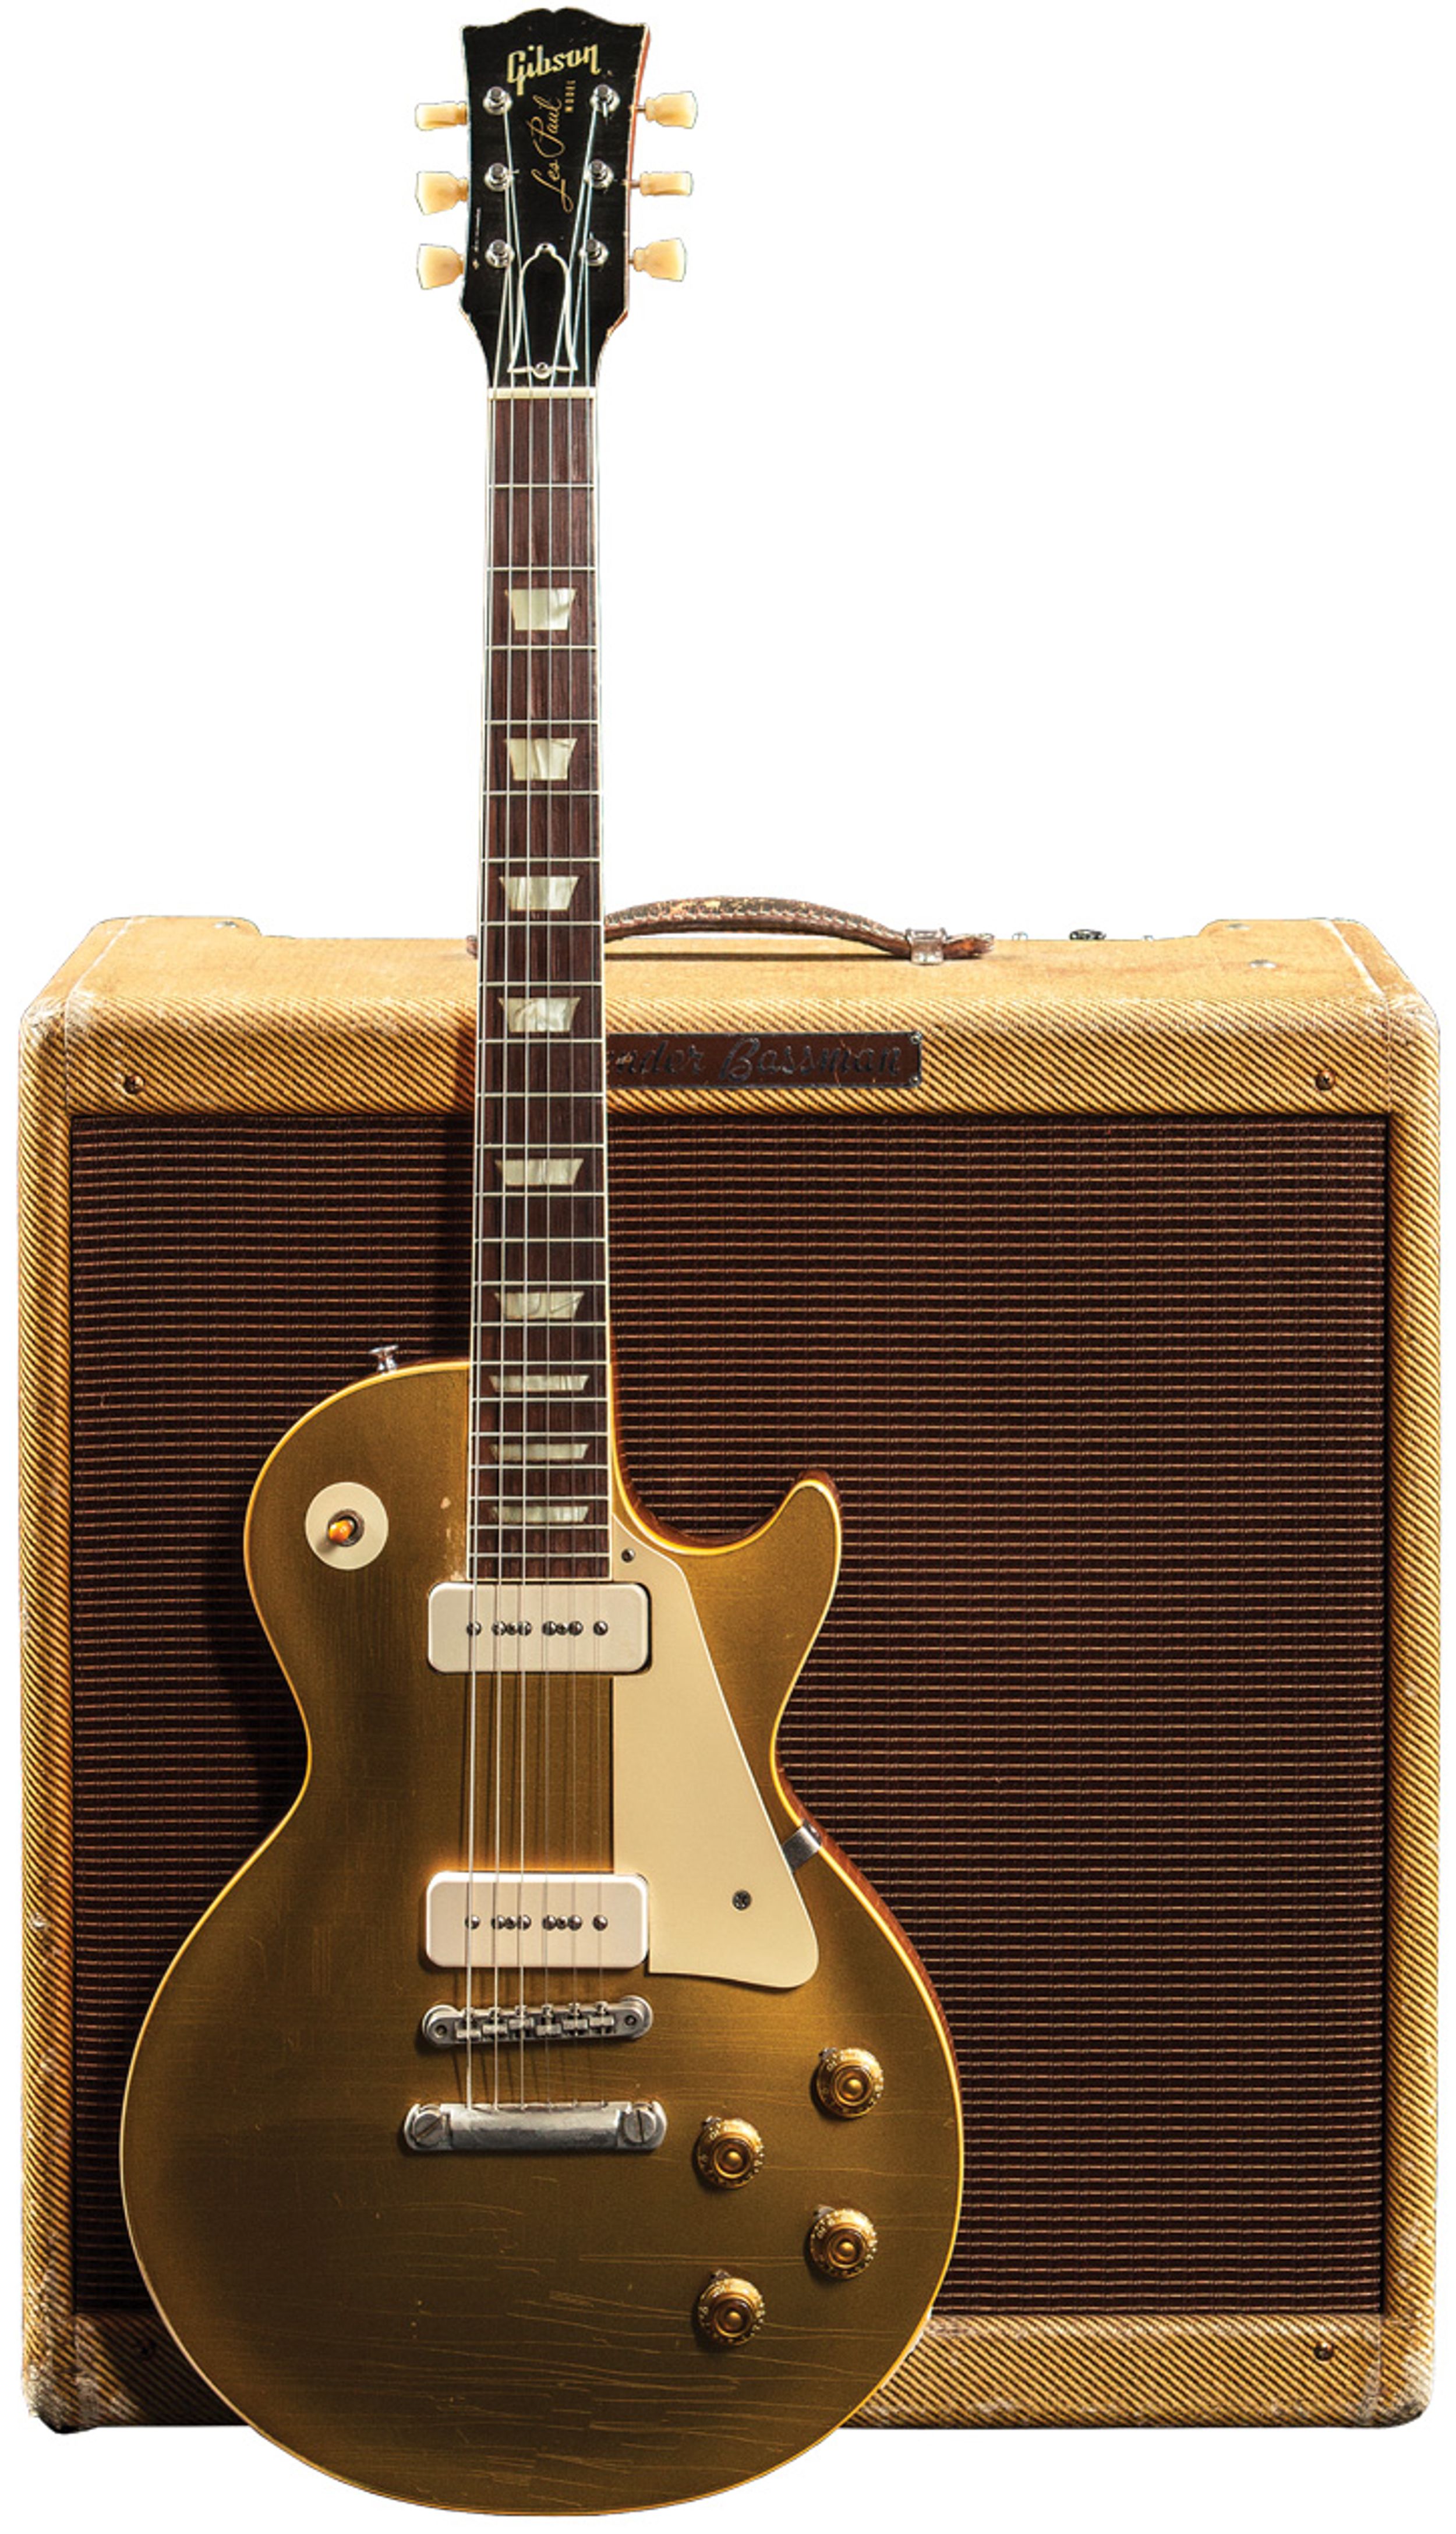 Vintage Vault: 1956 Gibson Les Paul